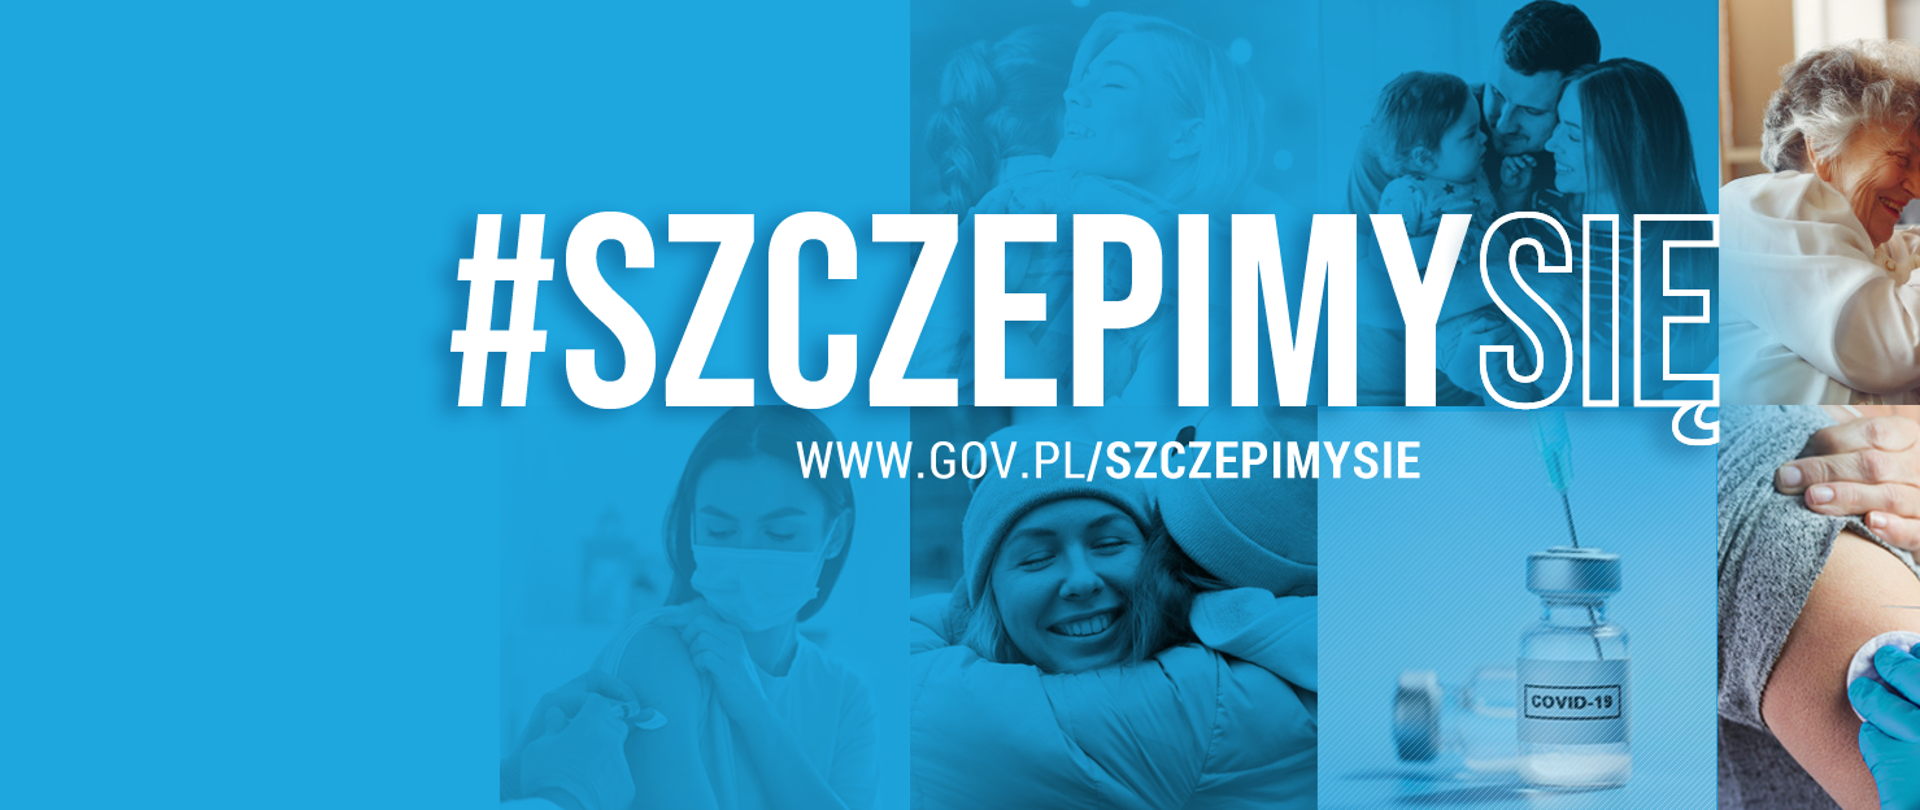 #SzczepimySię www.gov.pl/szczepimysie